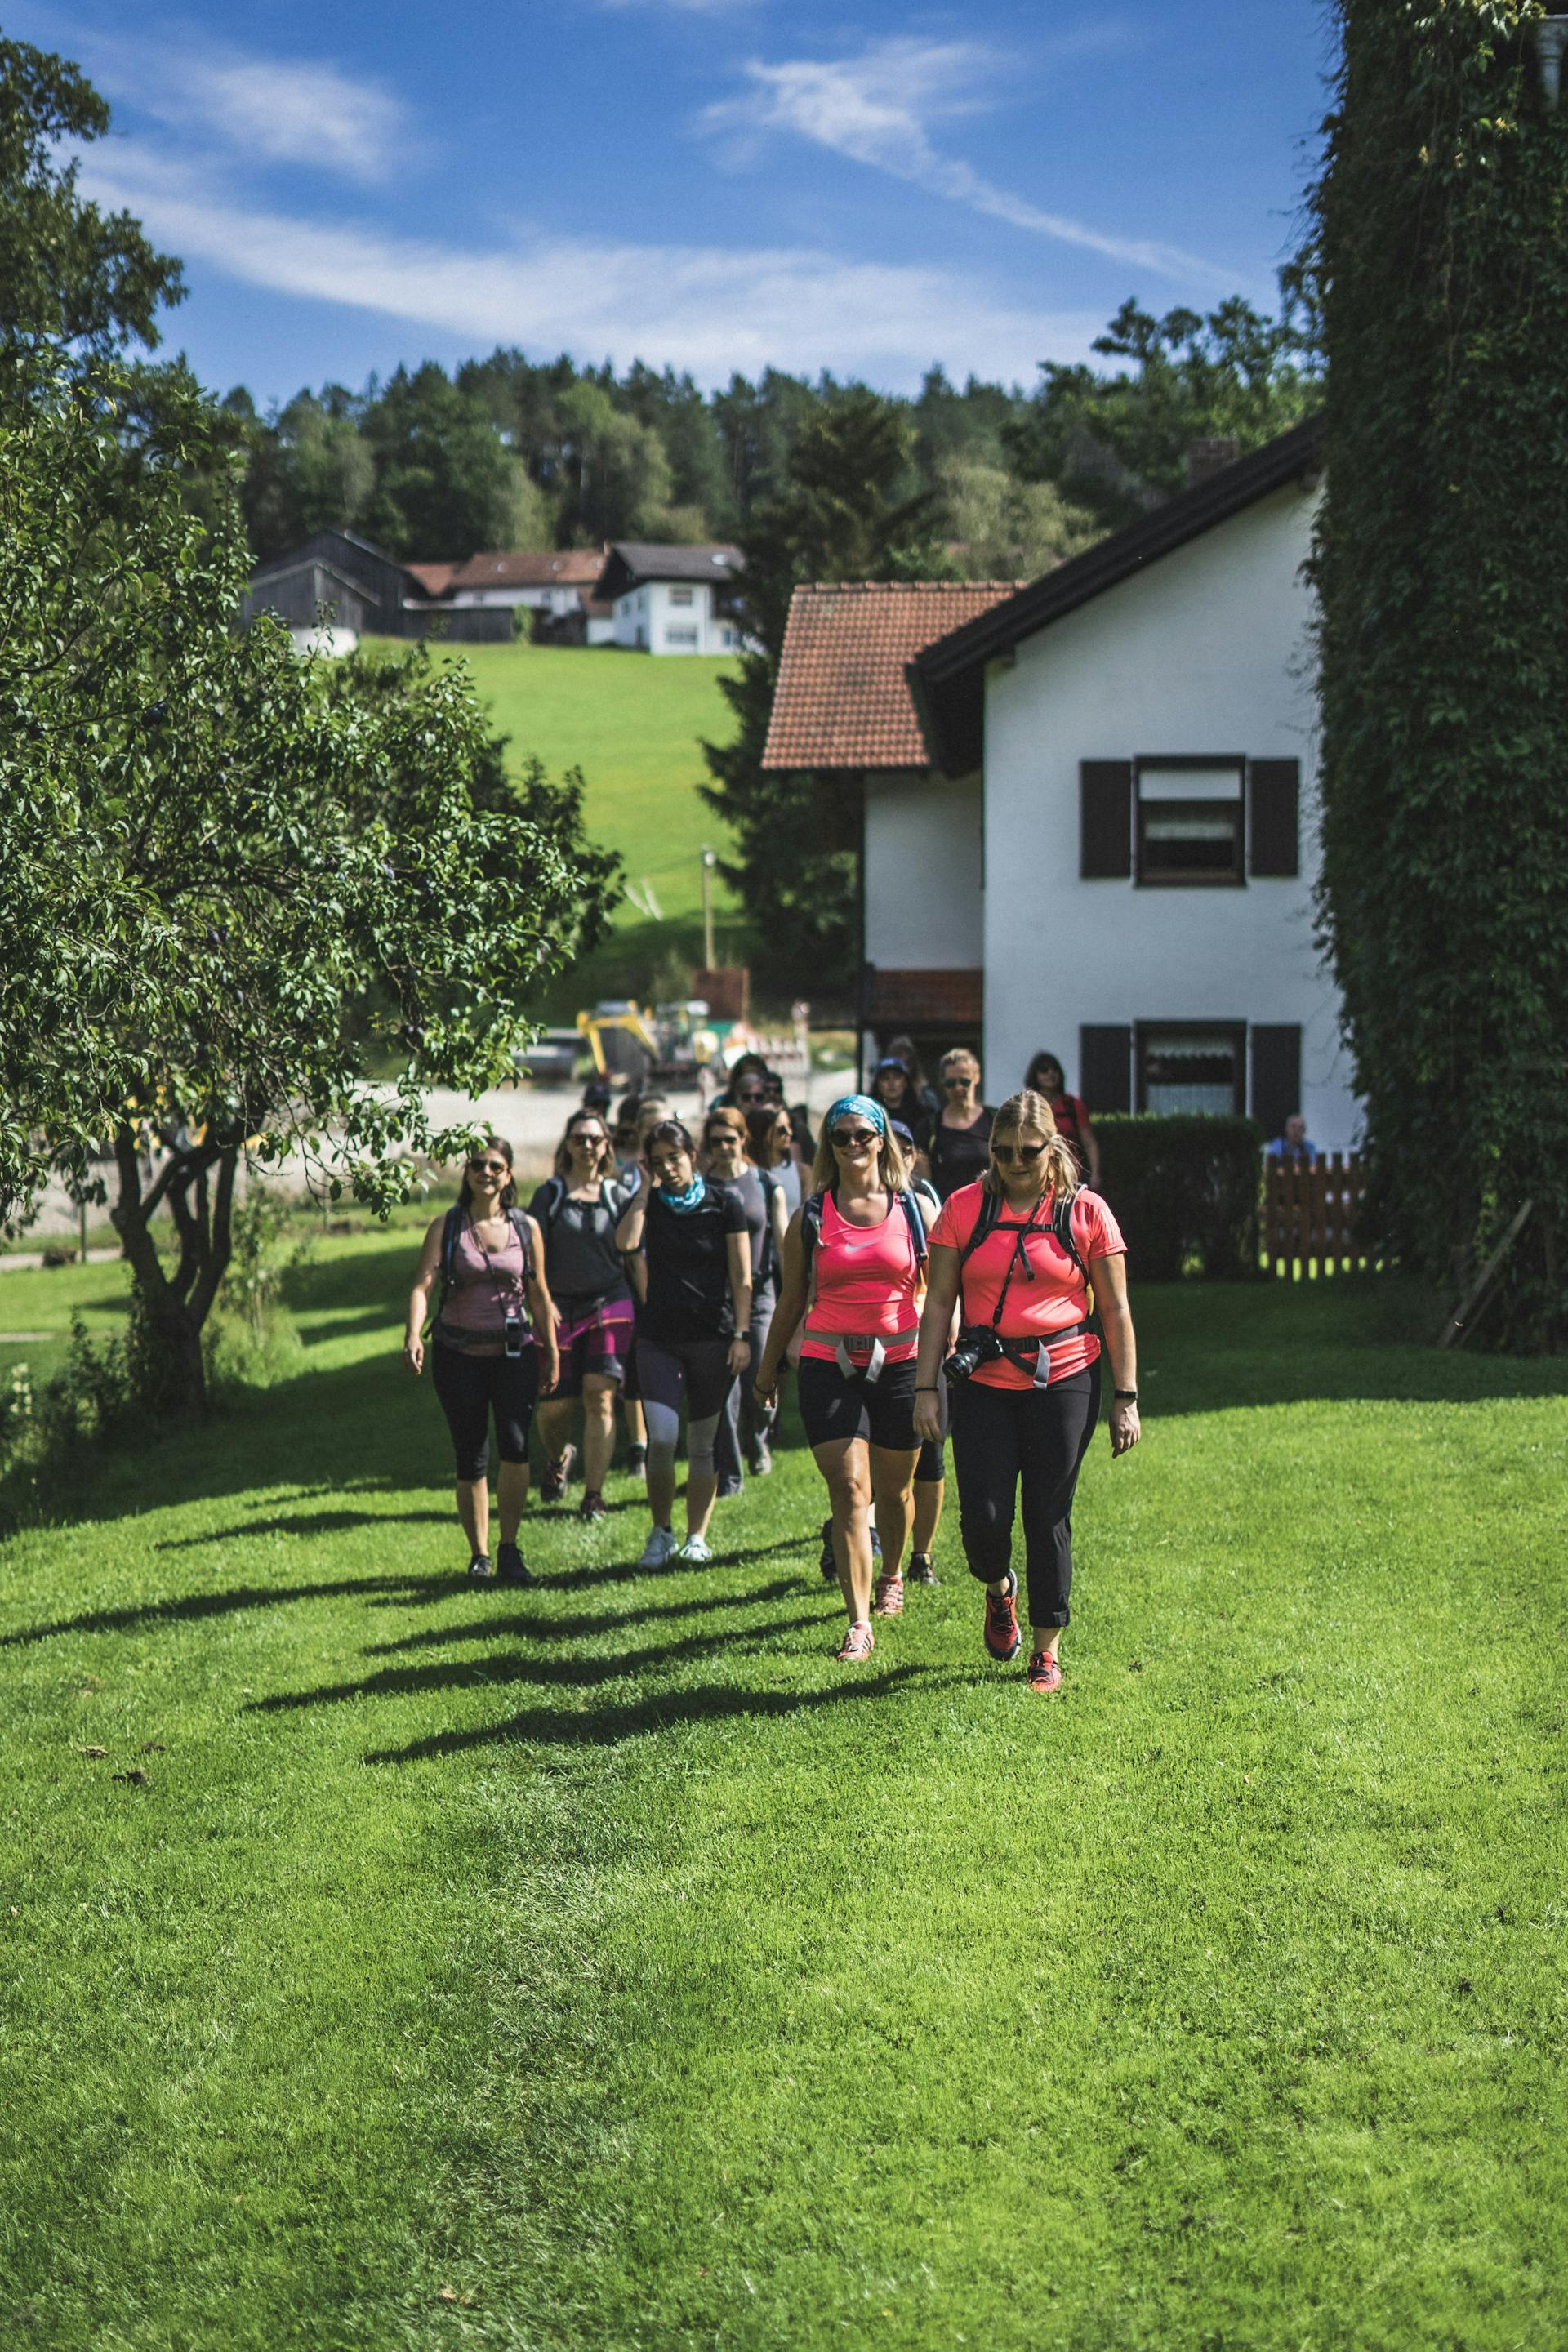 Glückliche Teilnehmer beim Wandern auf ihrer Break im Bayerischen Wald.